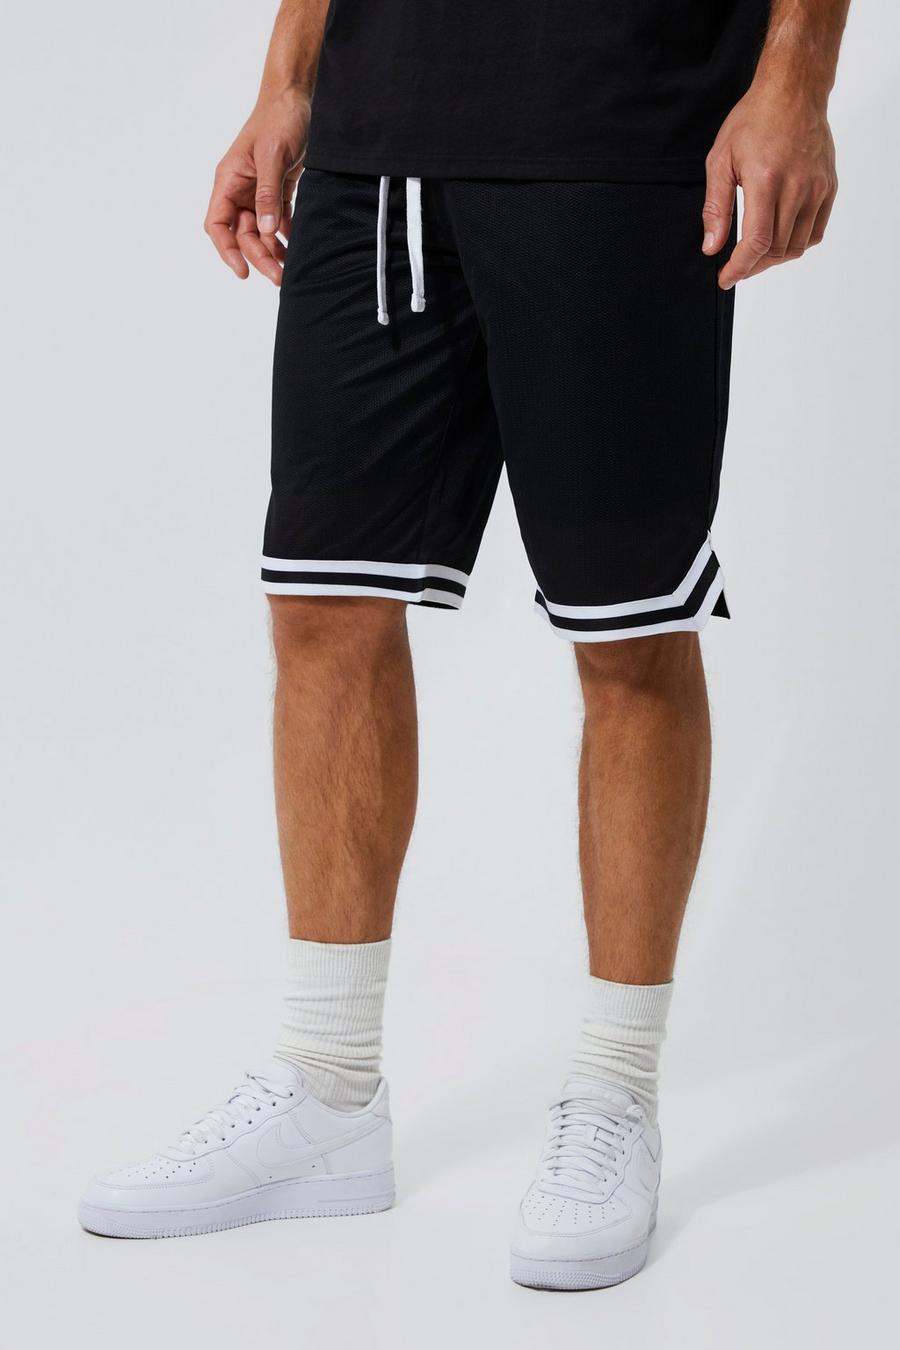 Pantaloncini da basket Tall in Airtex con fascia, Nero negro